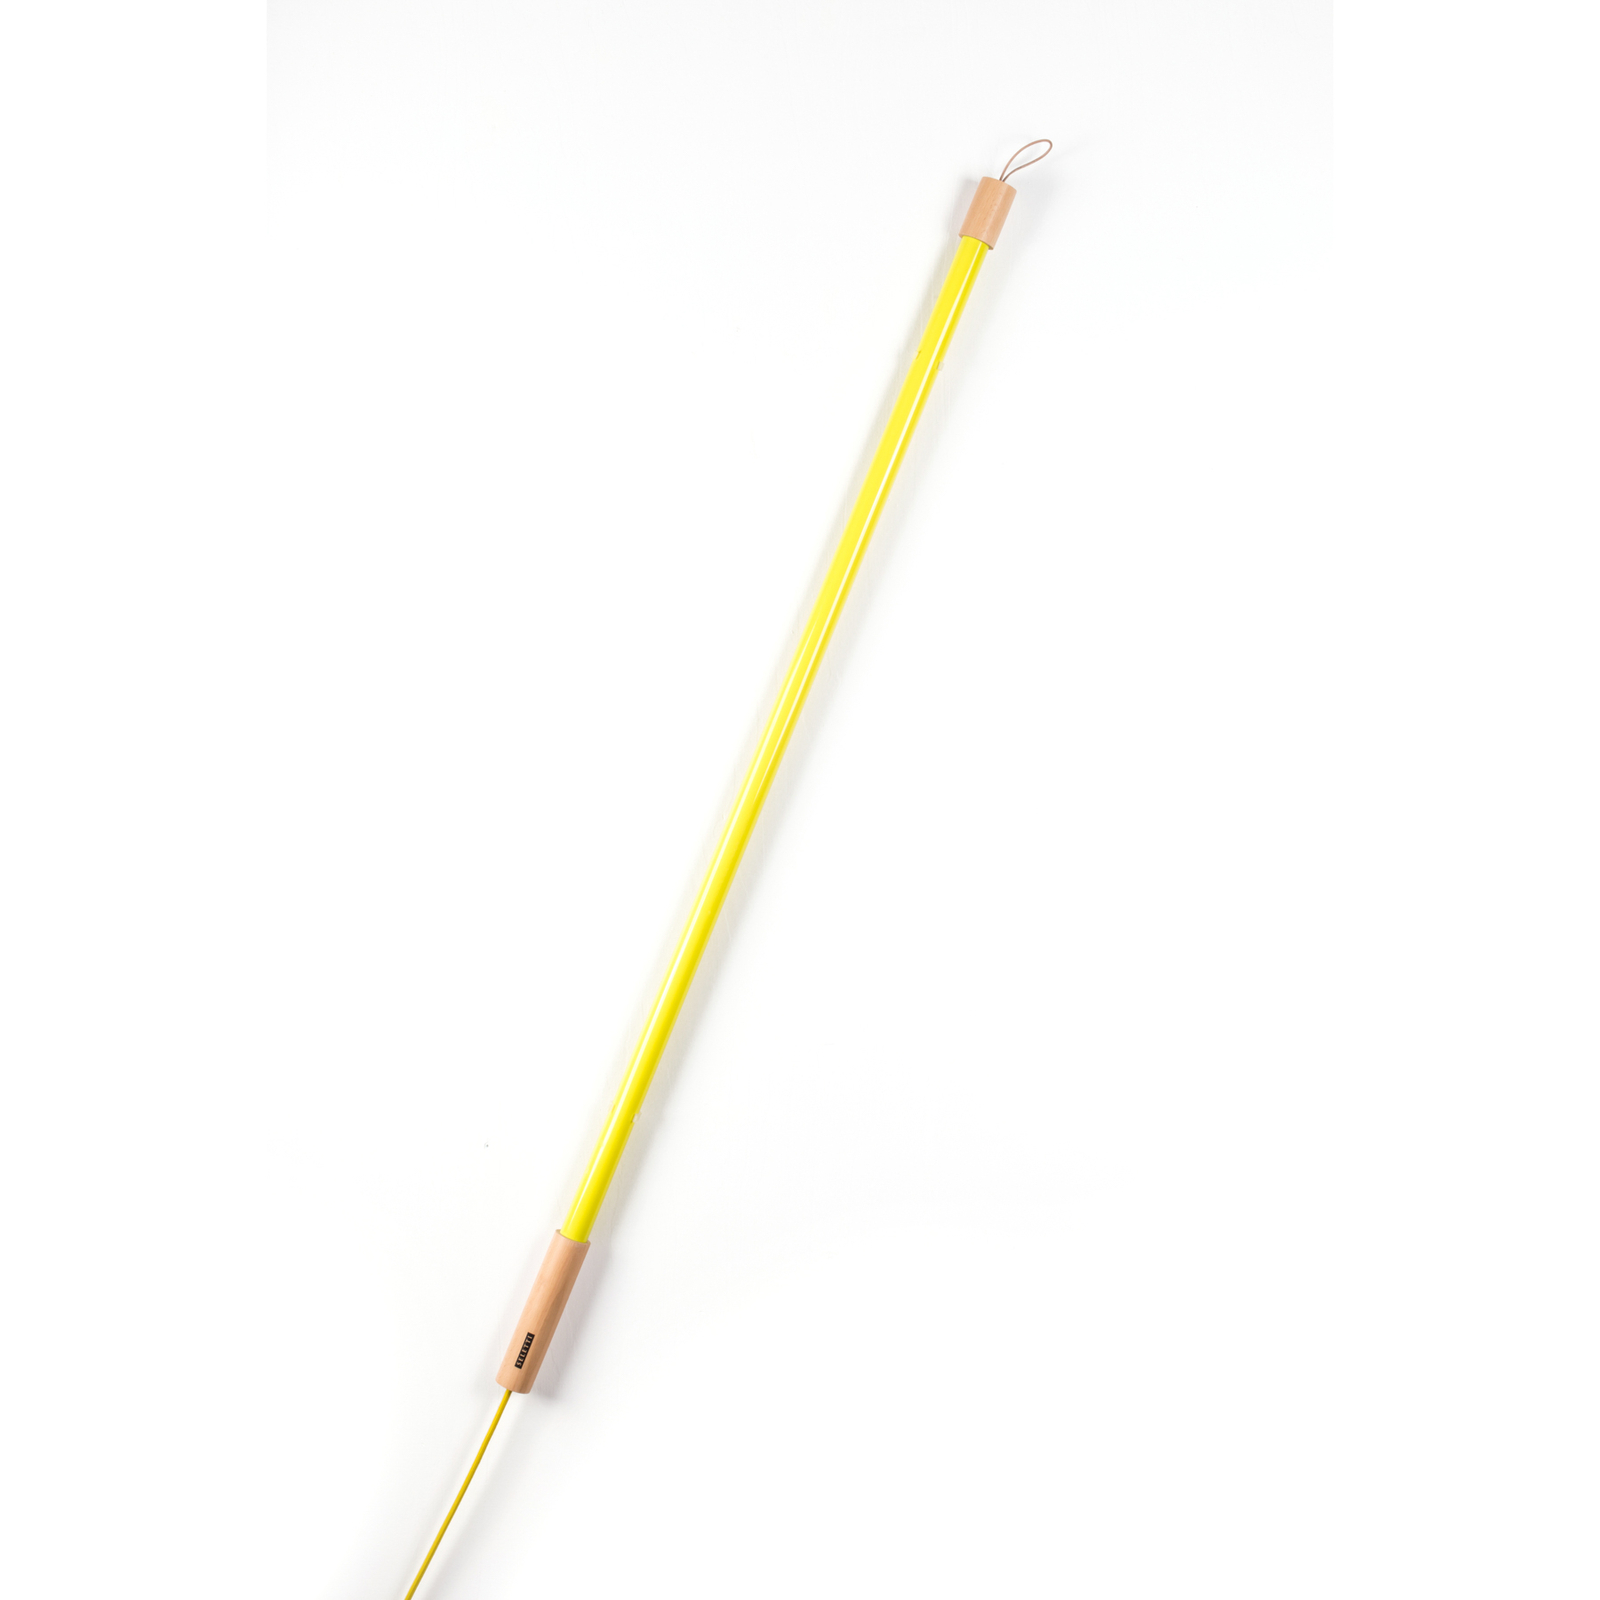 LED vloerlamp Linea met hout, geel